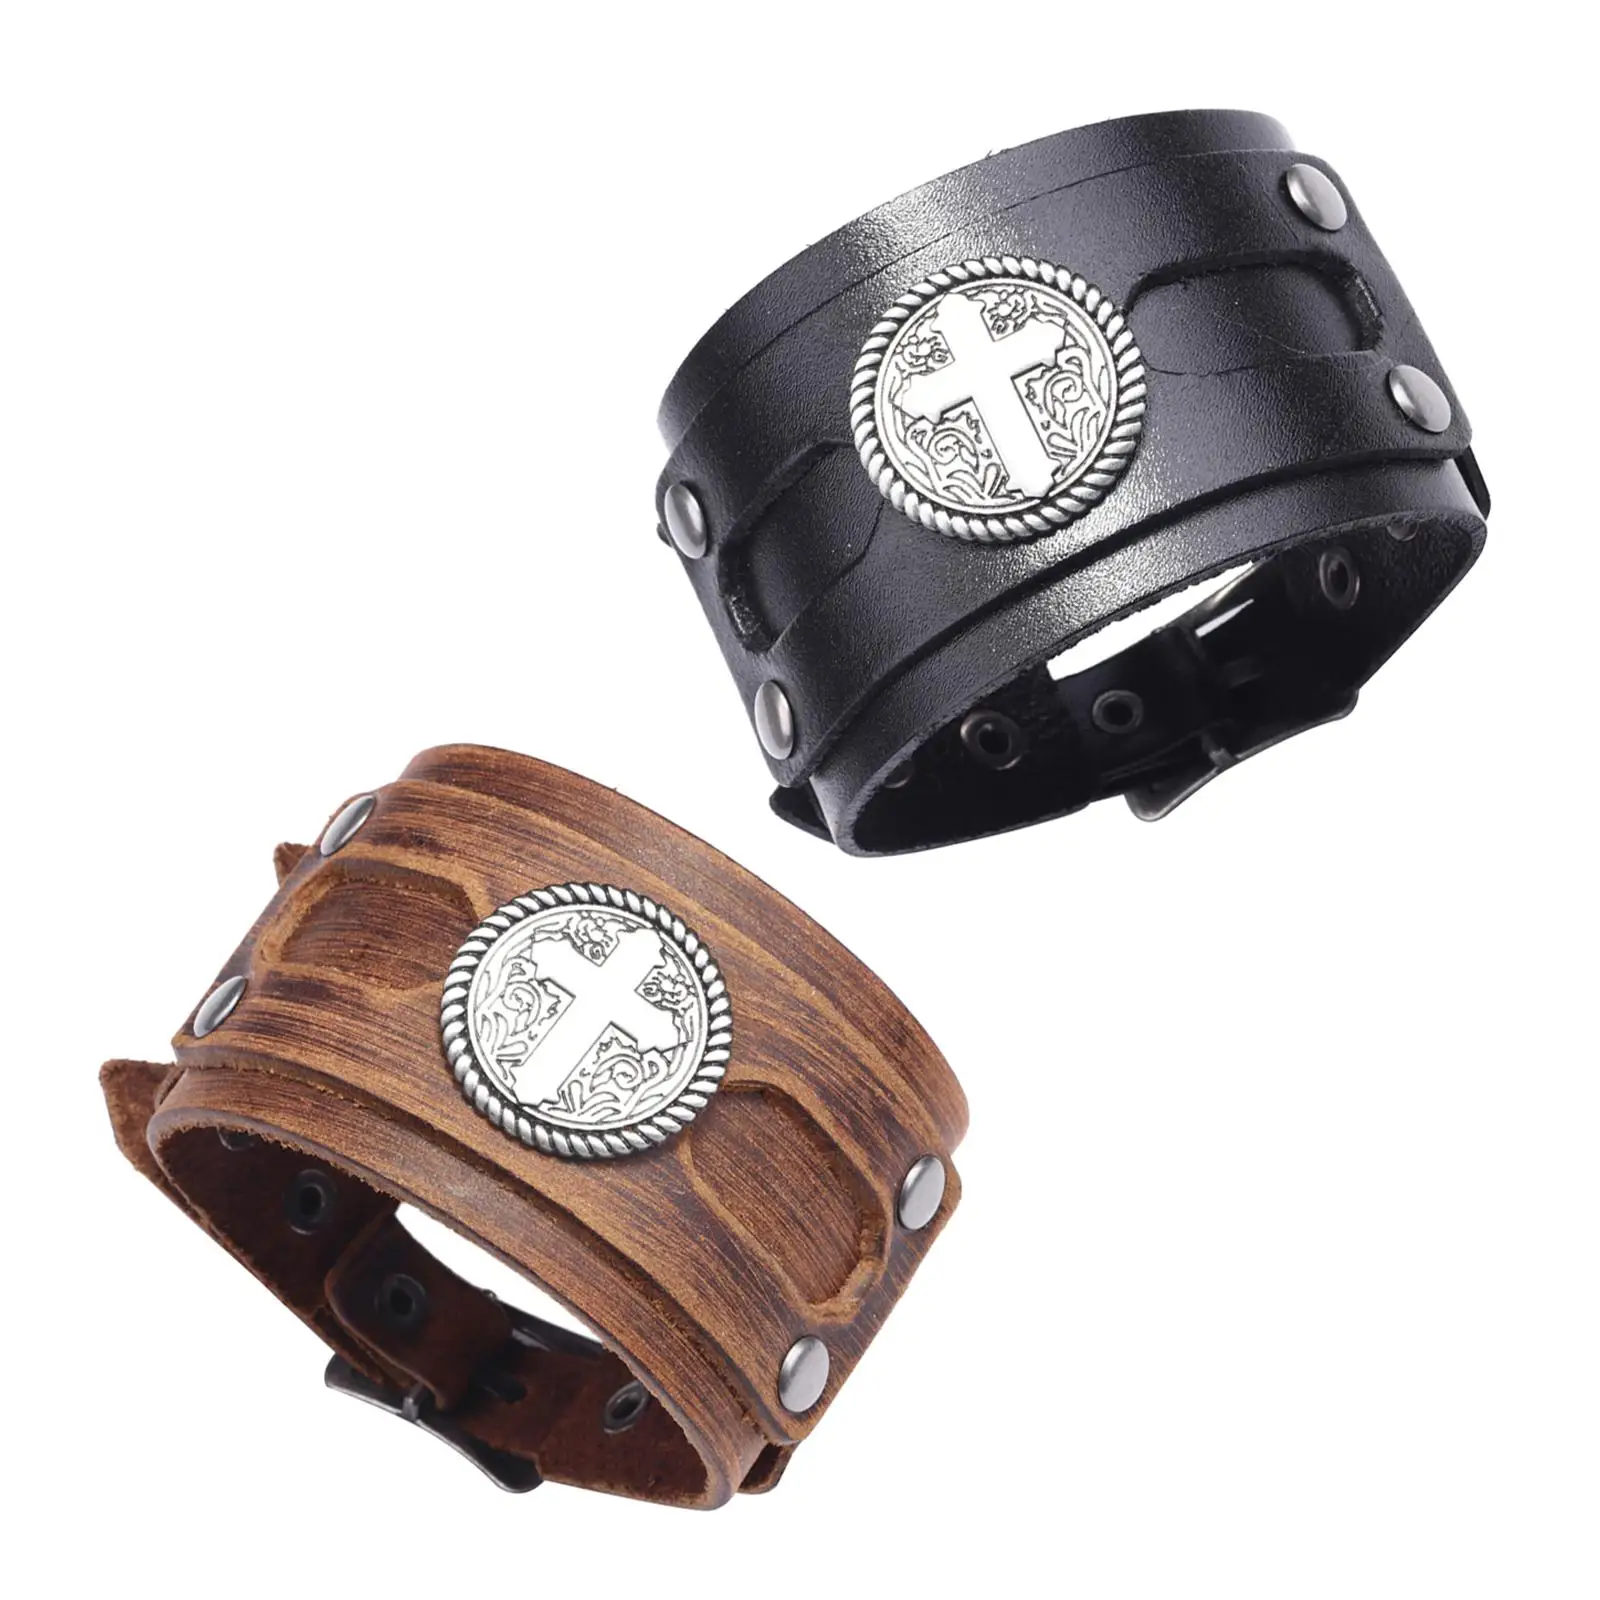 Punk rock metal buckle bracelet wide leather strap cuff bracelet